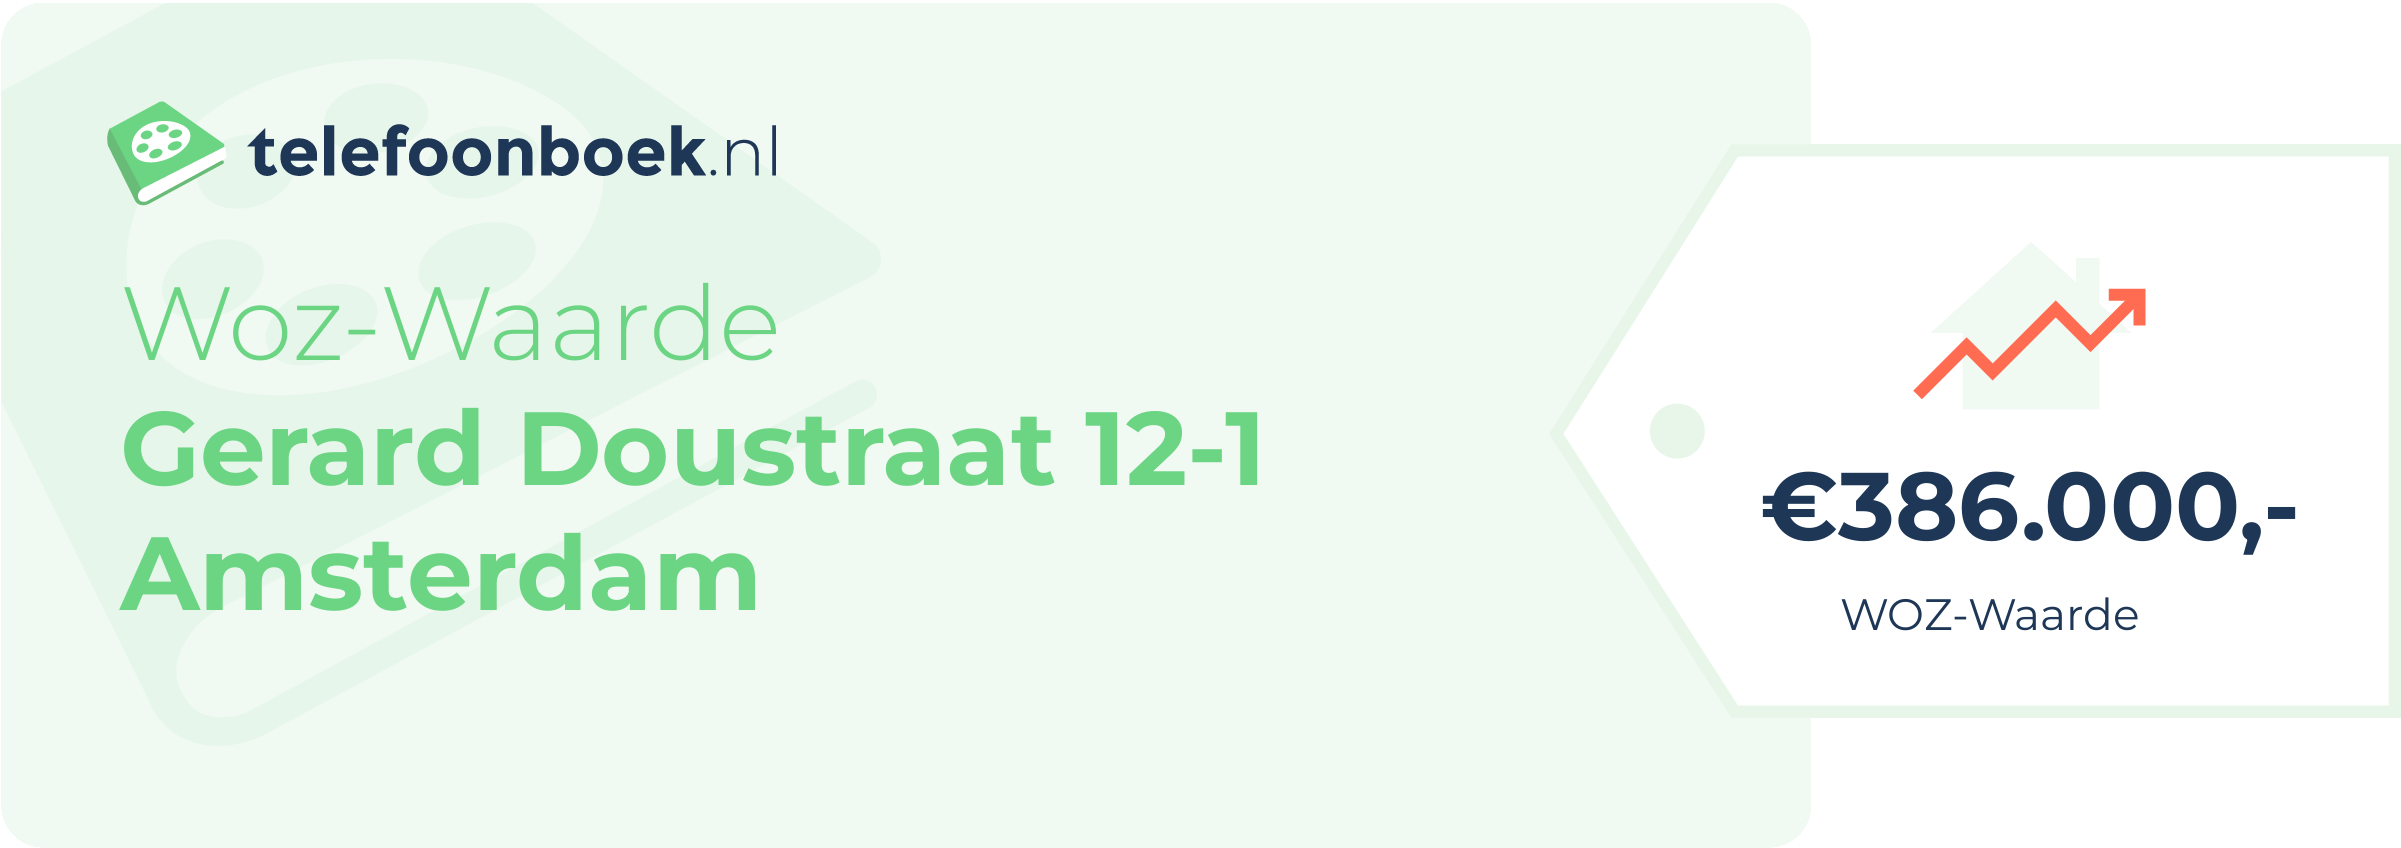 WOZ-waarde Gerard Doustraat 12-1 Amsterdam